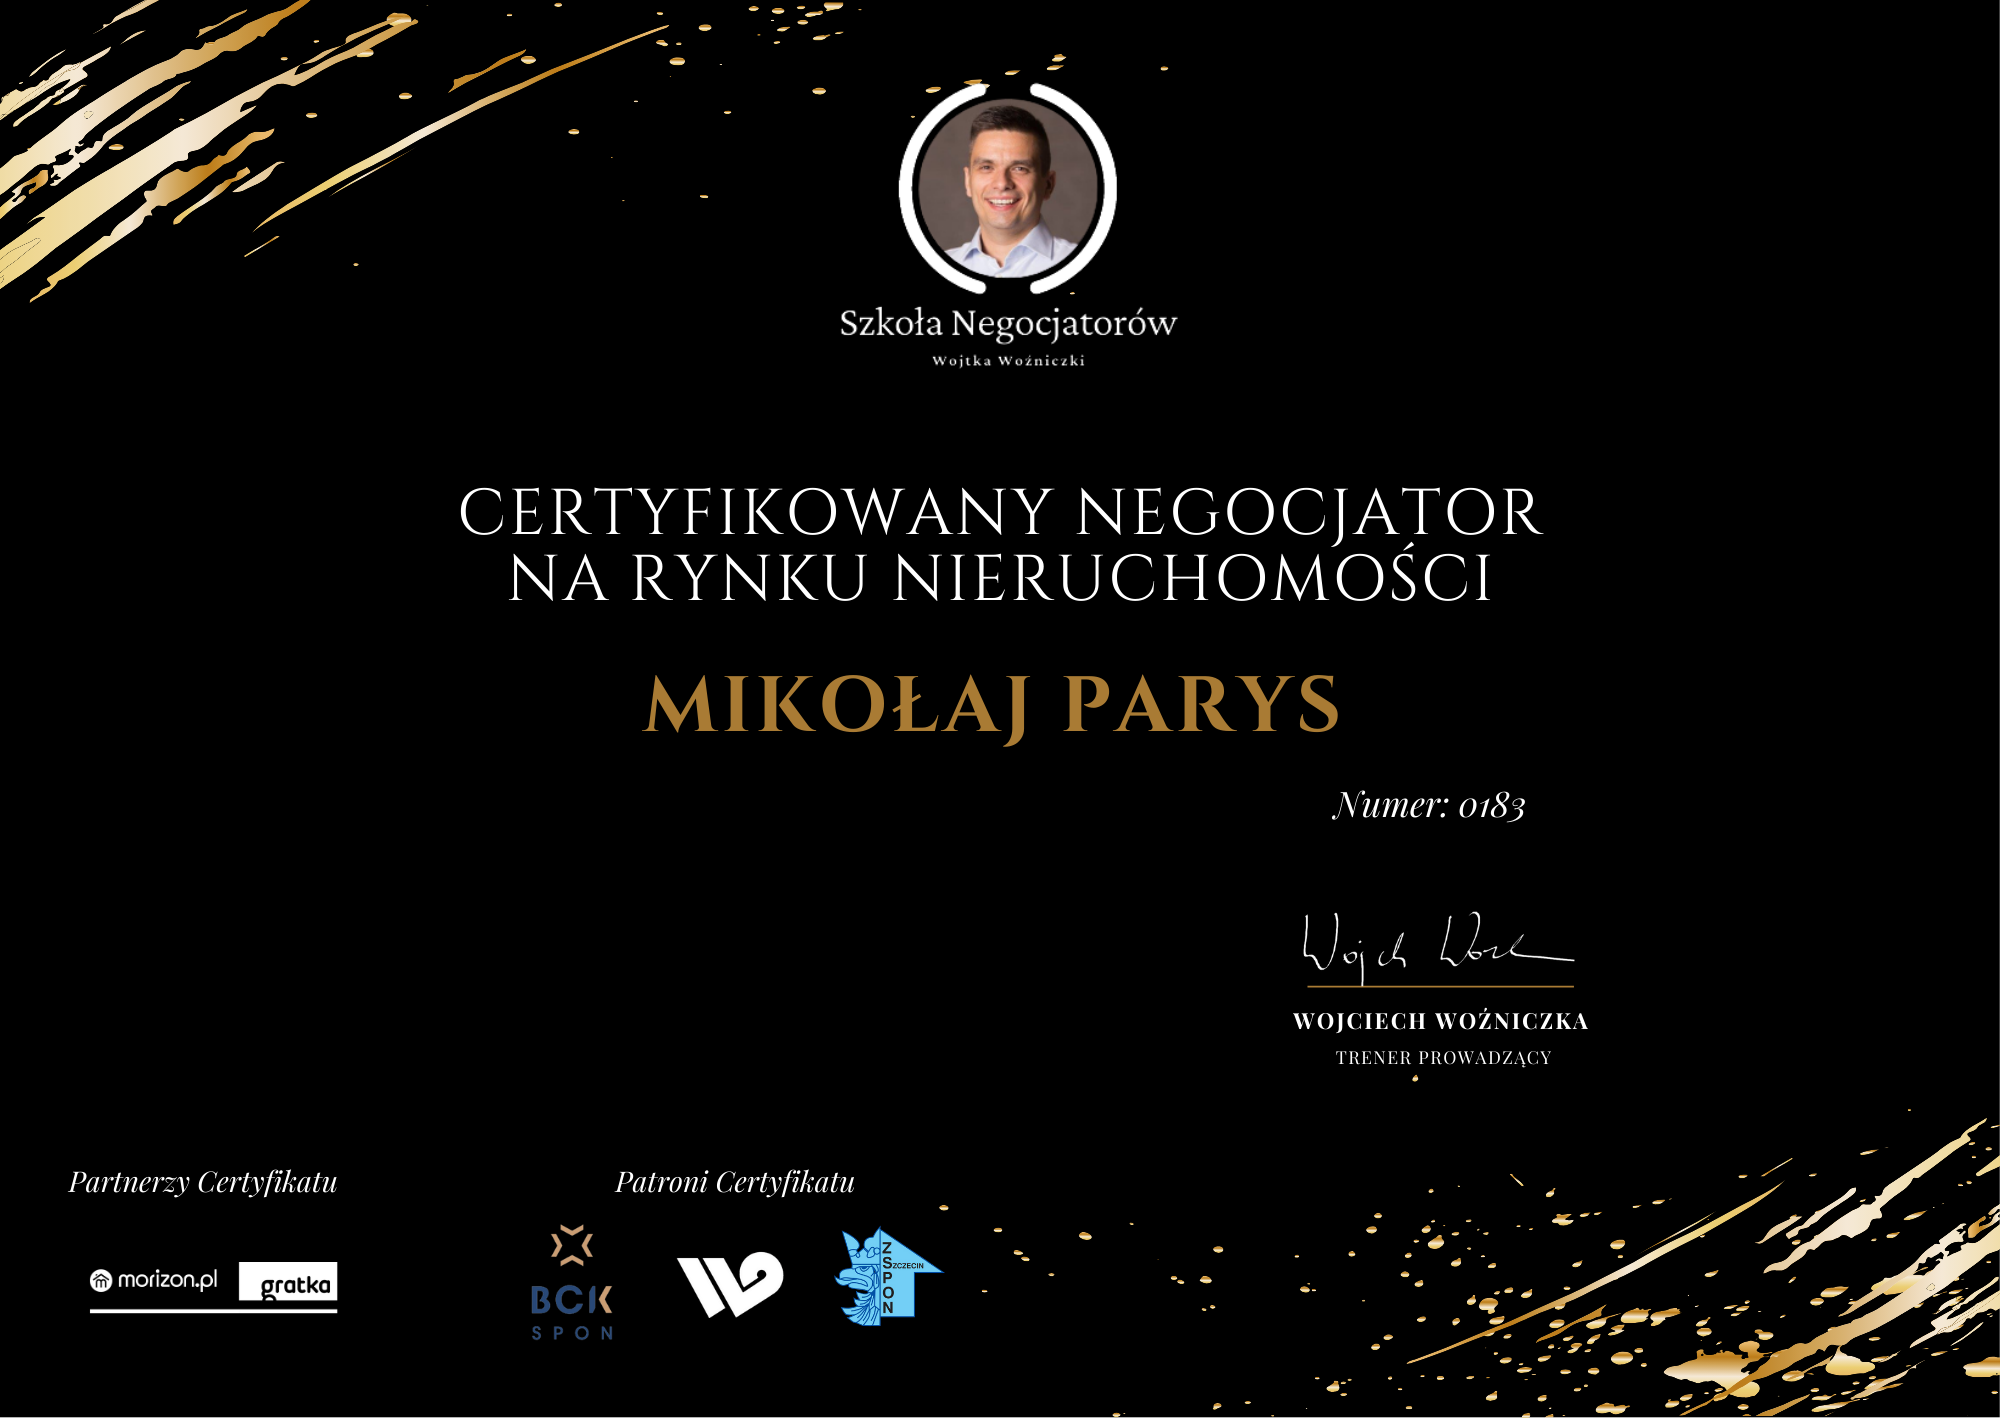 Certyfikowany Negocjator Mikołaj Parys